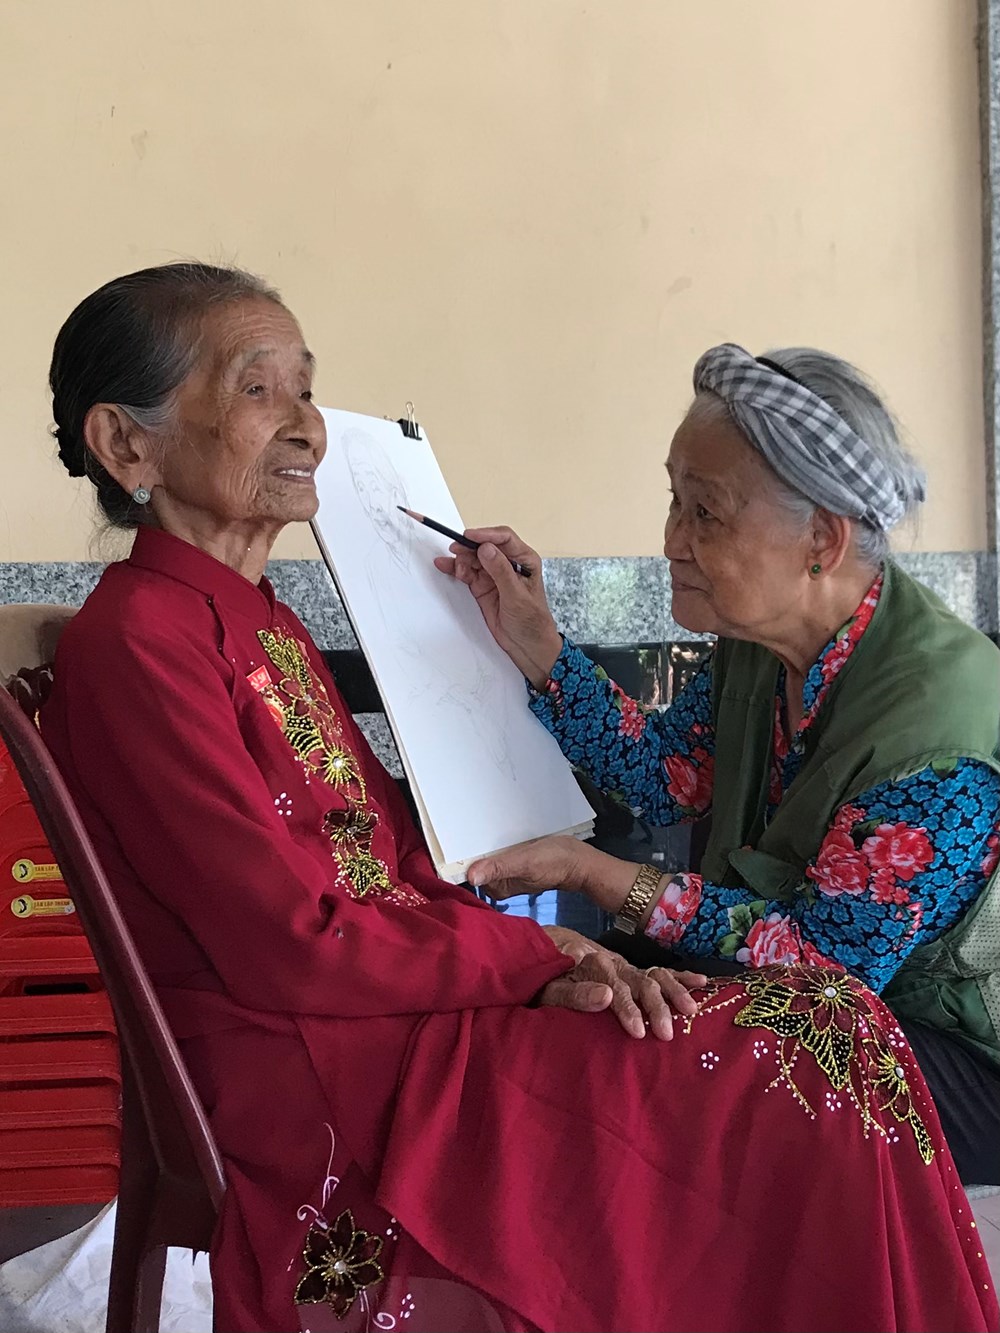  Nữ họa sĩ 76 tuổi đi dọc đất nước vẽ Mẹ Việt Nam anh hùng - ảnh 4